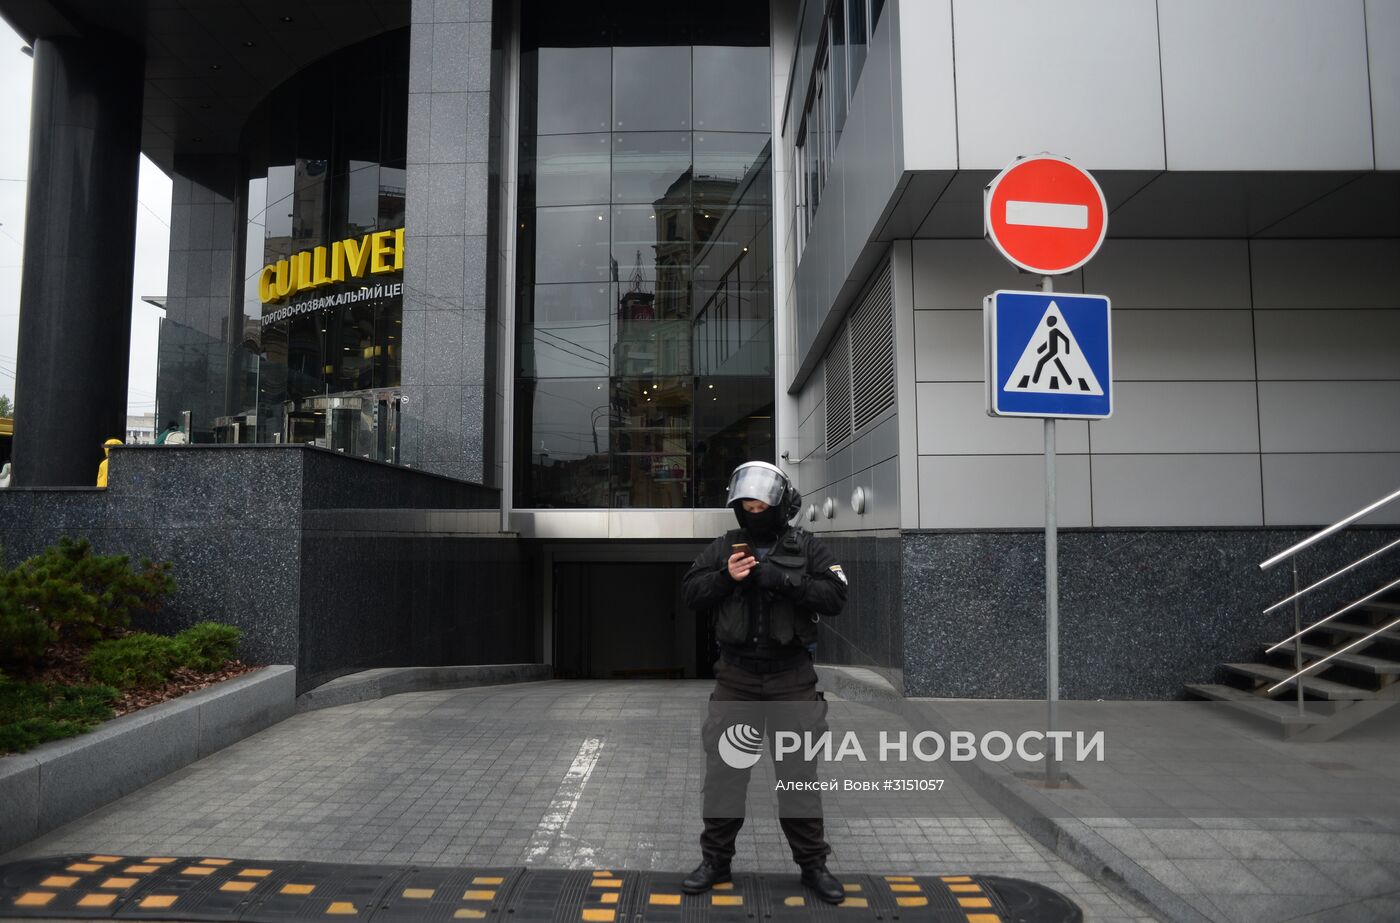 Обыски проходят в офисах украинского издания "Вести"